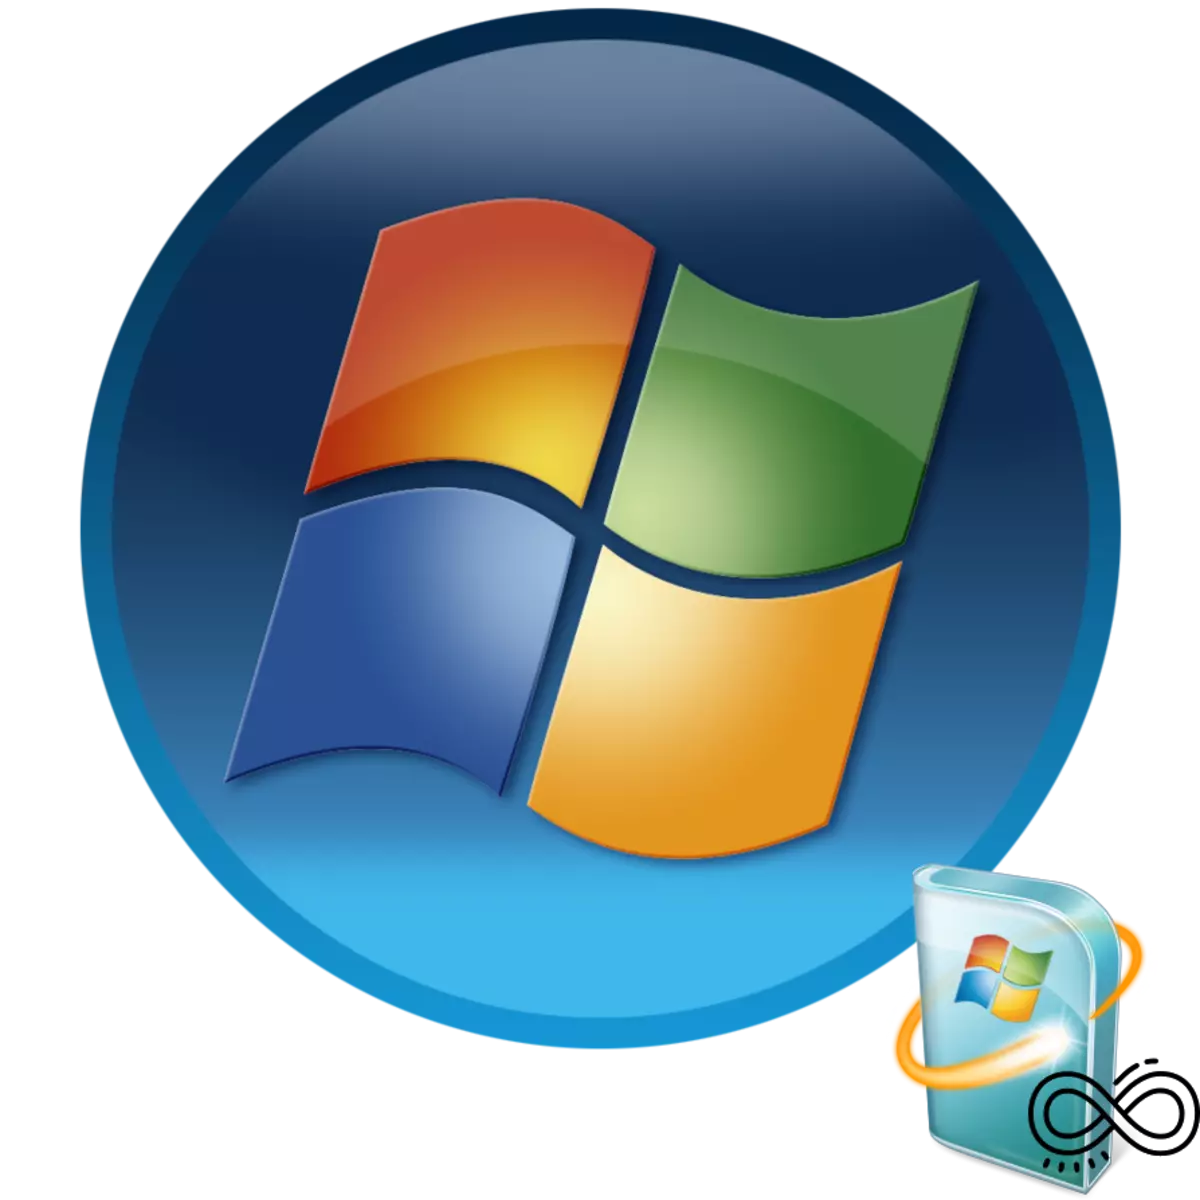 Panelusuran Tanpa wates kanggo nganyari ing Windows 7